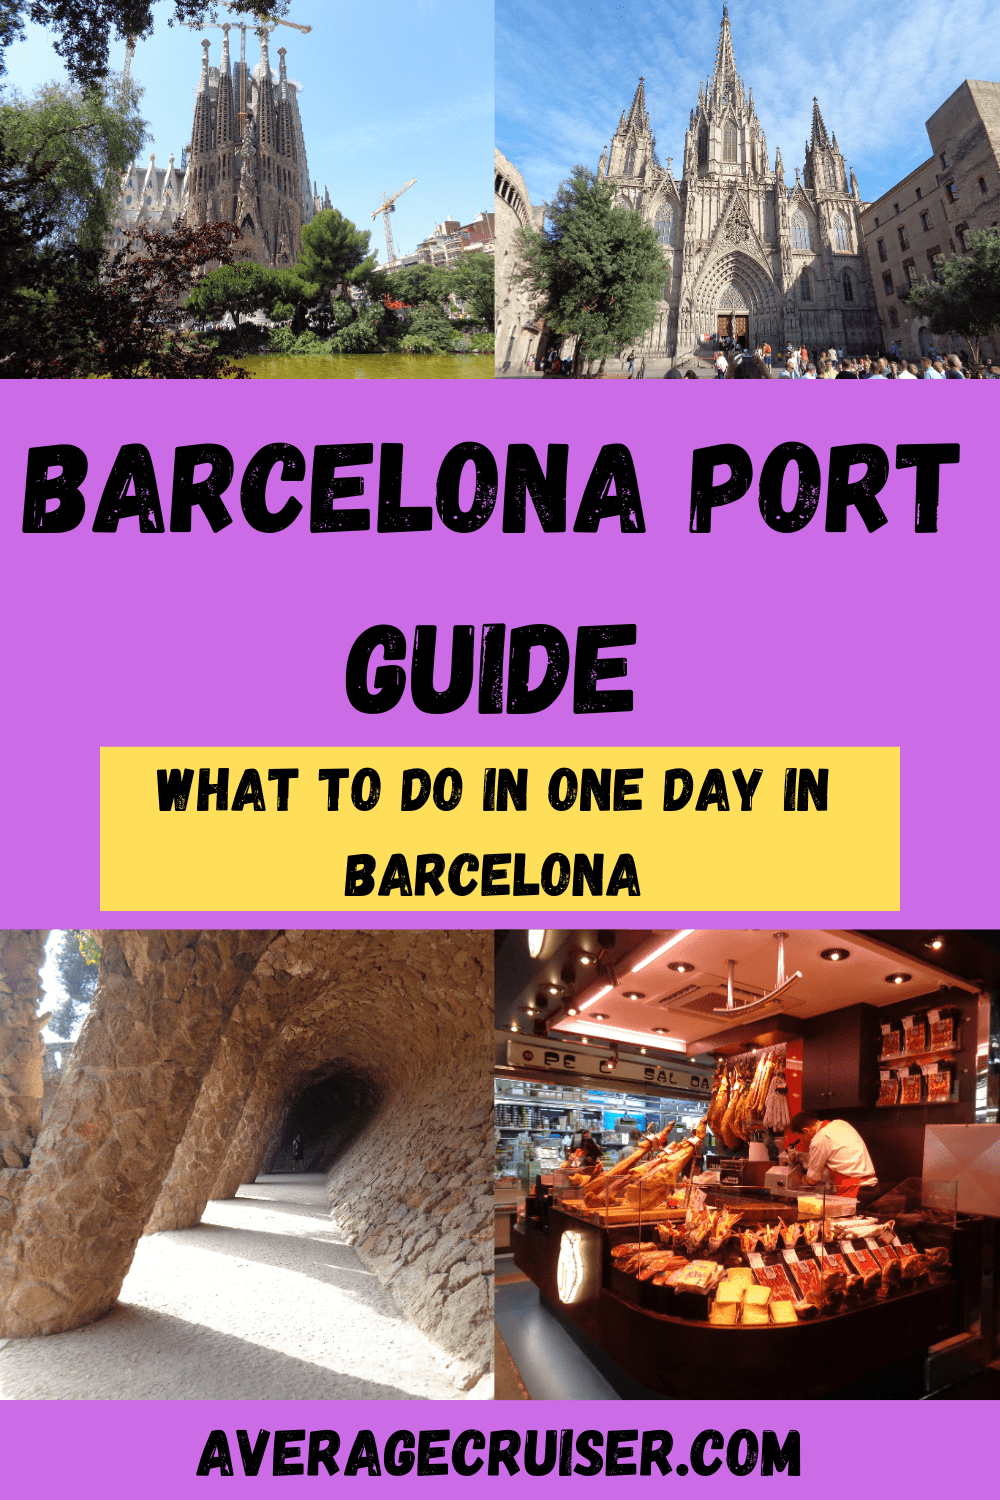 Barcelona Port Guide - Average Cruiser